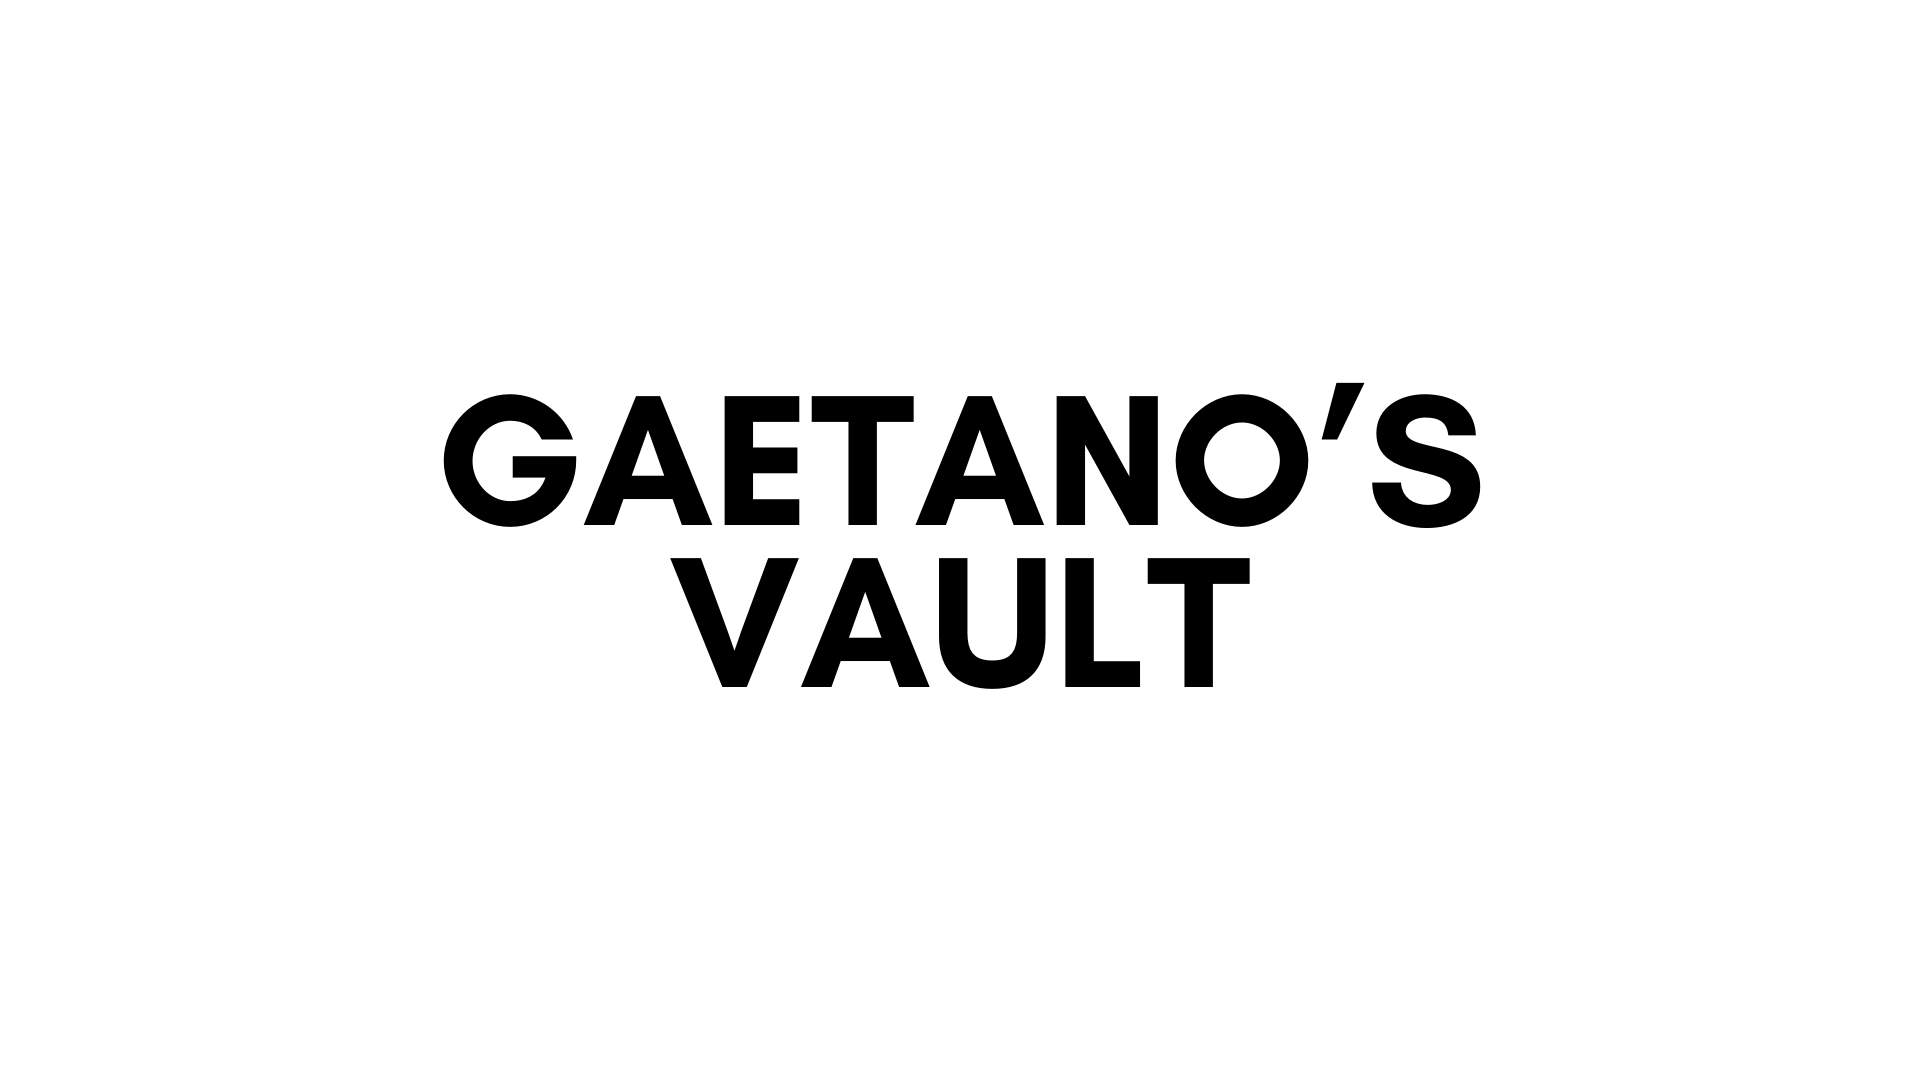 GAETANO'S VAULT